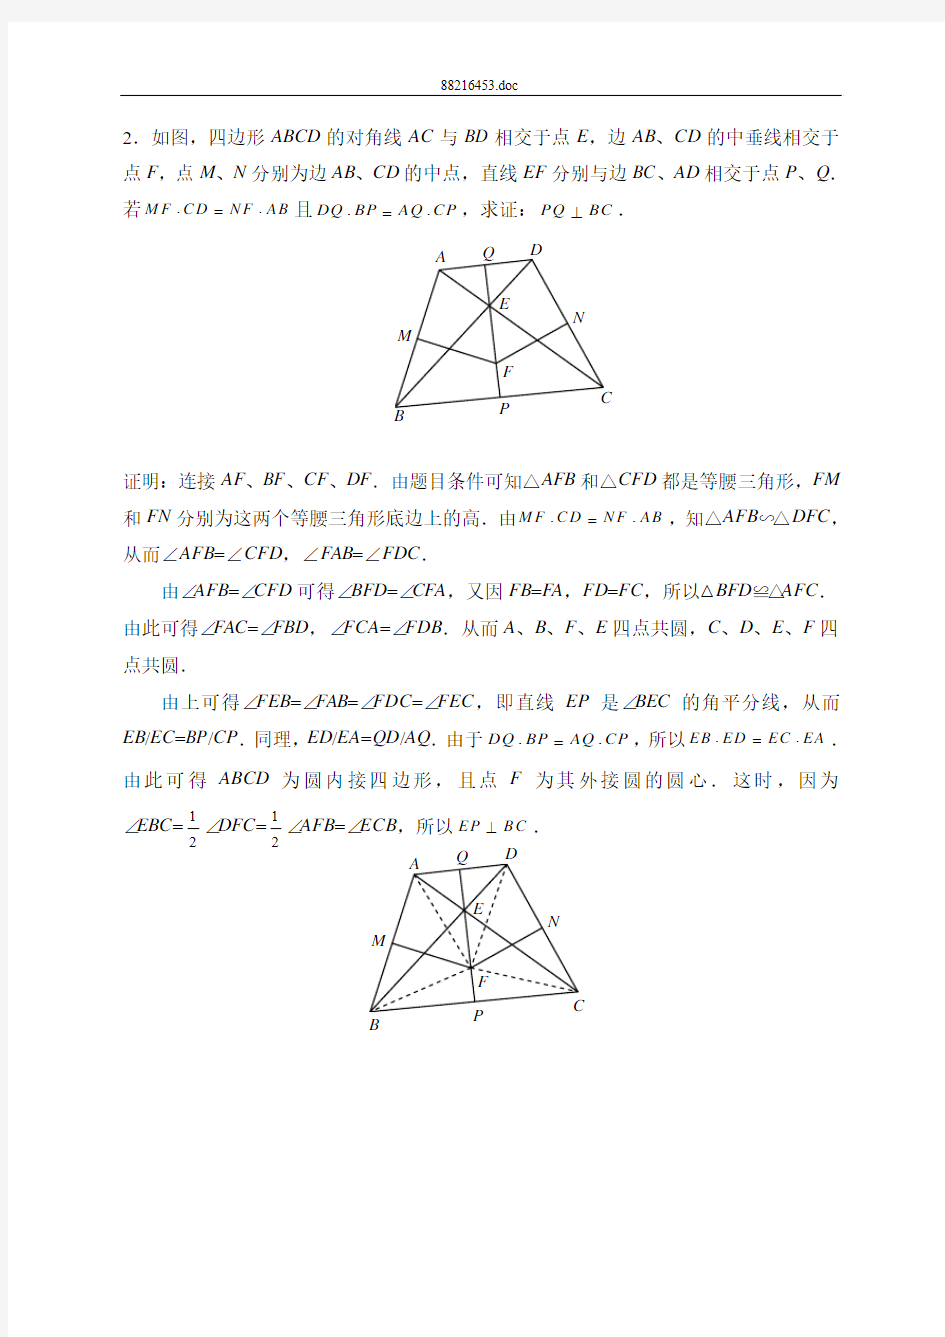 中国女子数学奥林匹克(CGMO)第10届(2011)解答